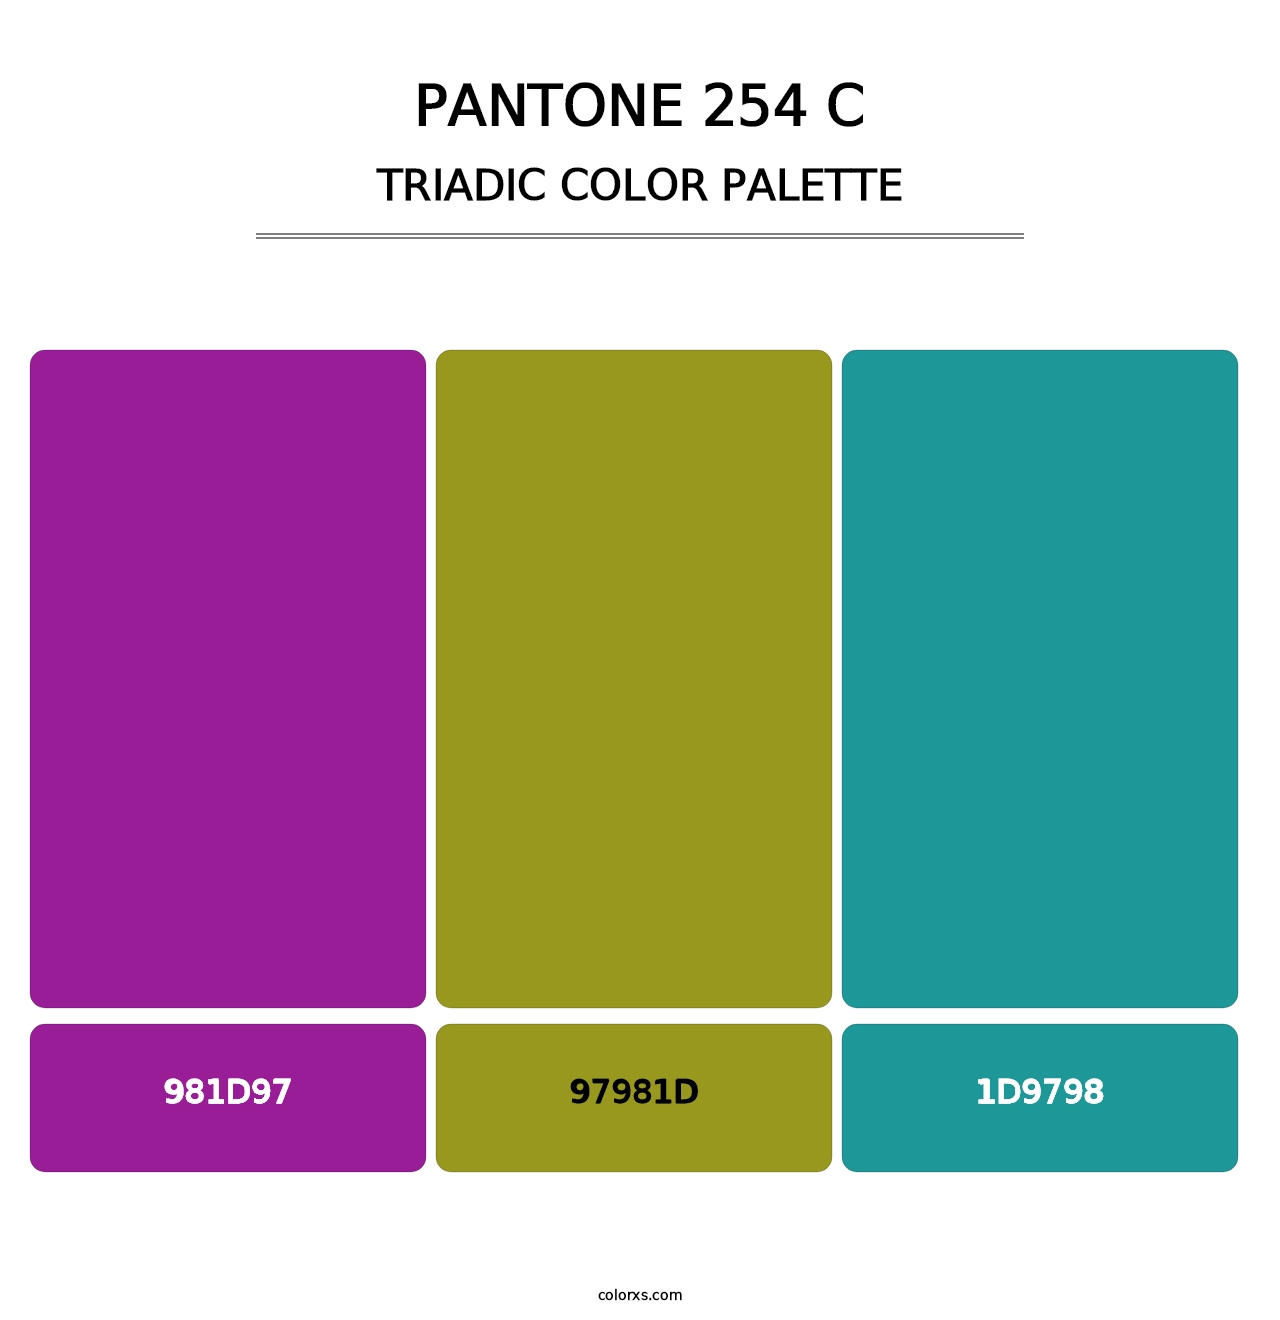 PANTONE 254 C - Triadic Color Palette